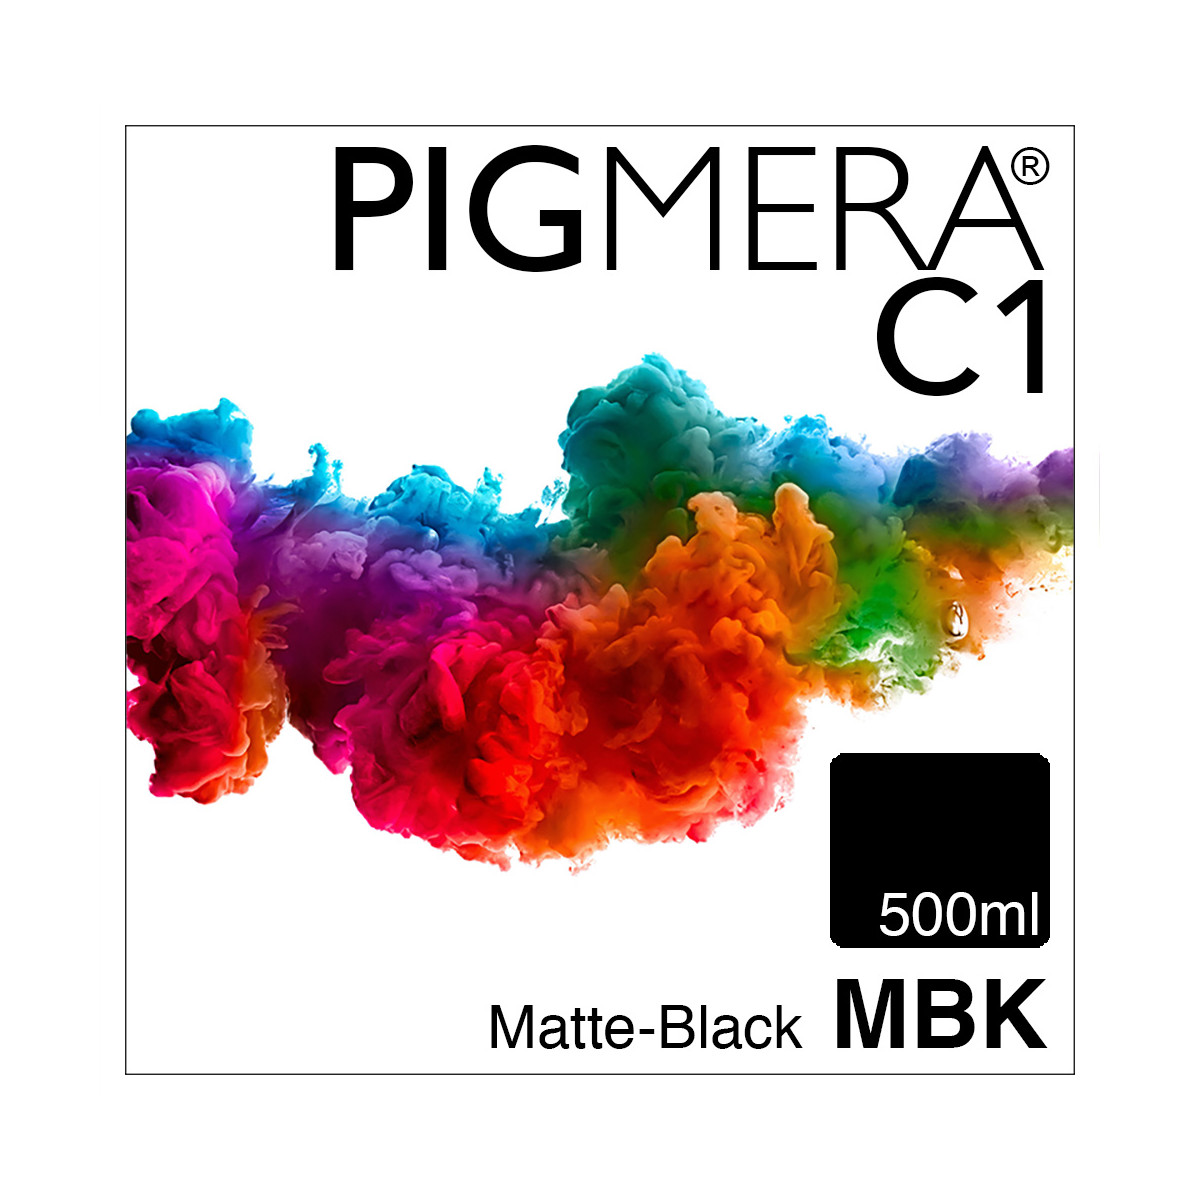 farbenwerk Pigmera C1 BottleMatte-Black 500ml